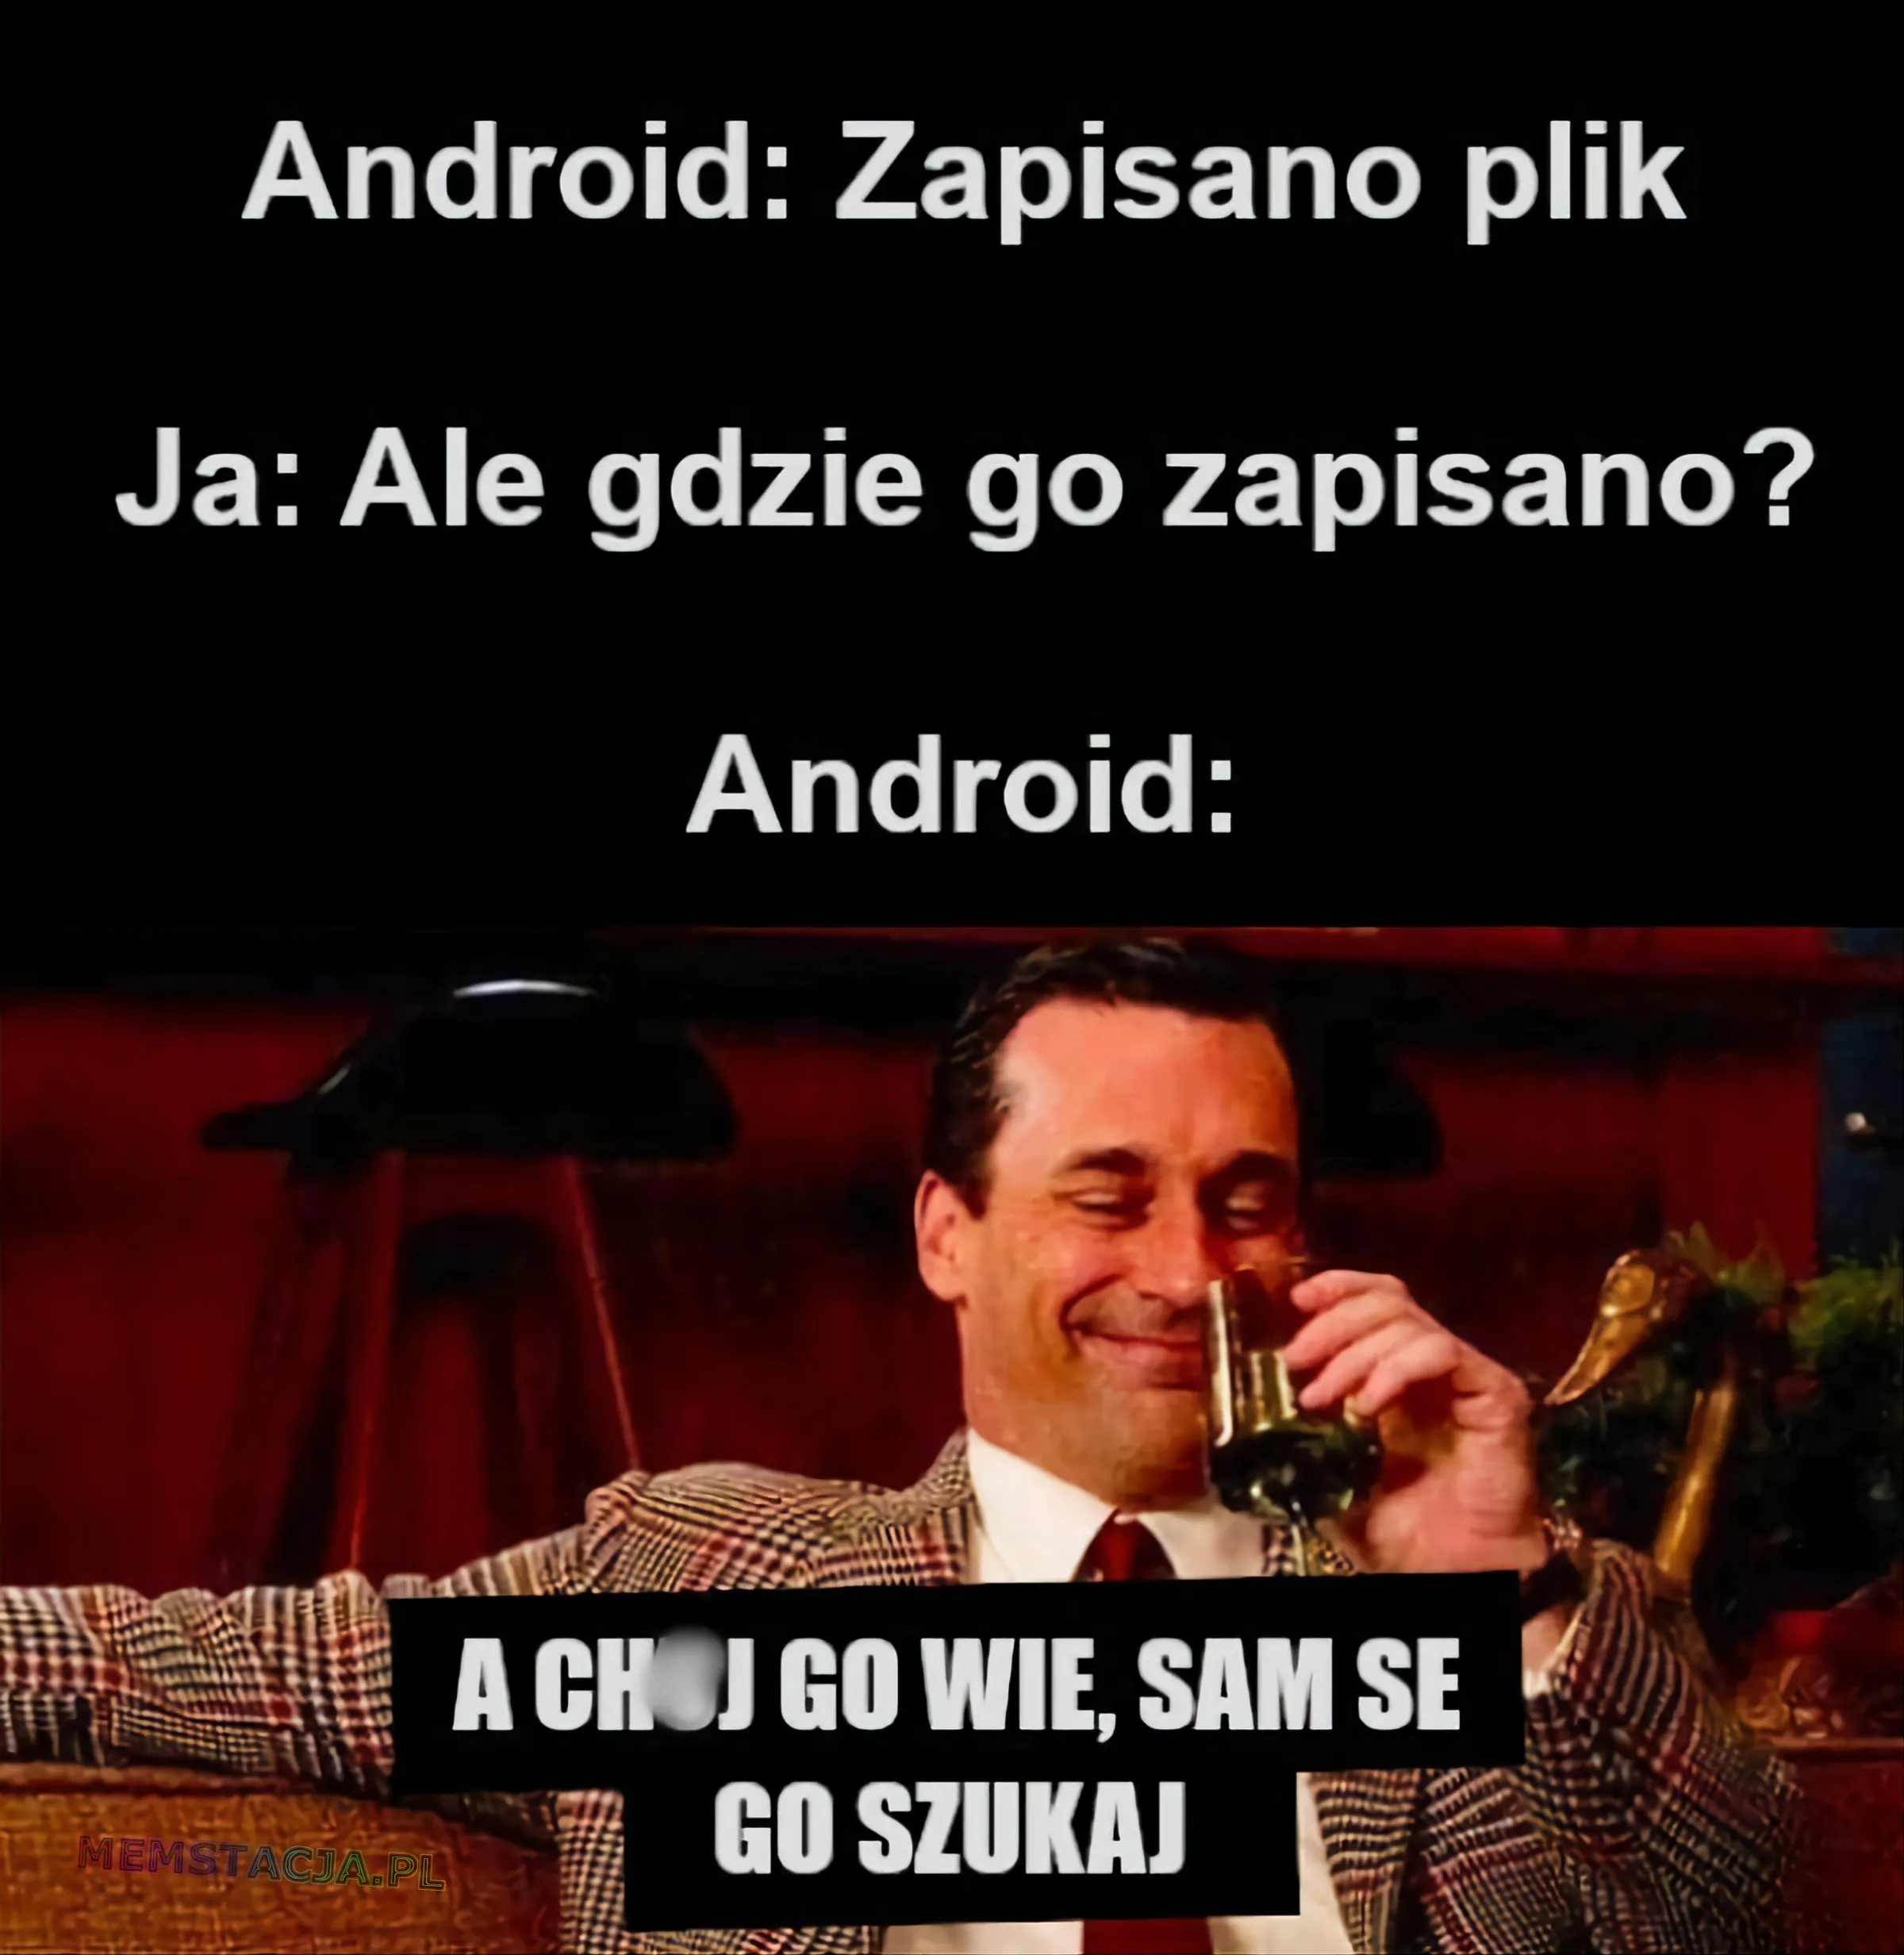 Mem z wyluzowanym i zadowolonym mężczyzną, który siedzi na kanapie. 'Android: Zapisano plik; Ja: Ale gdzie go zapisano?; Android: A ch*j go wie, sam se go szukaj'